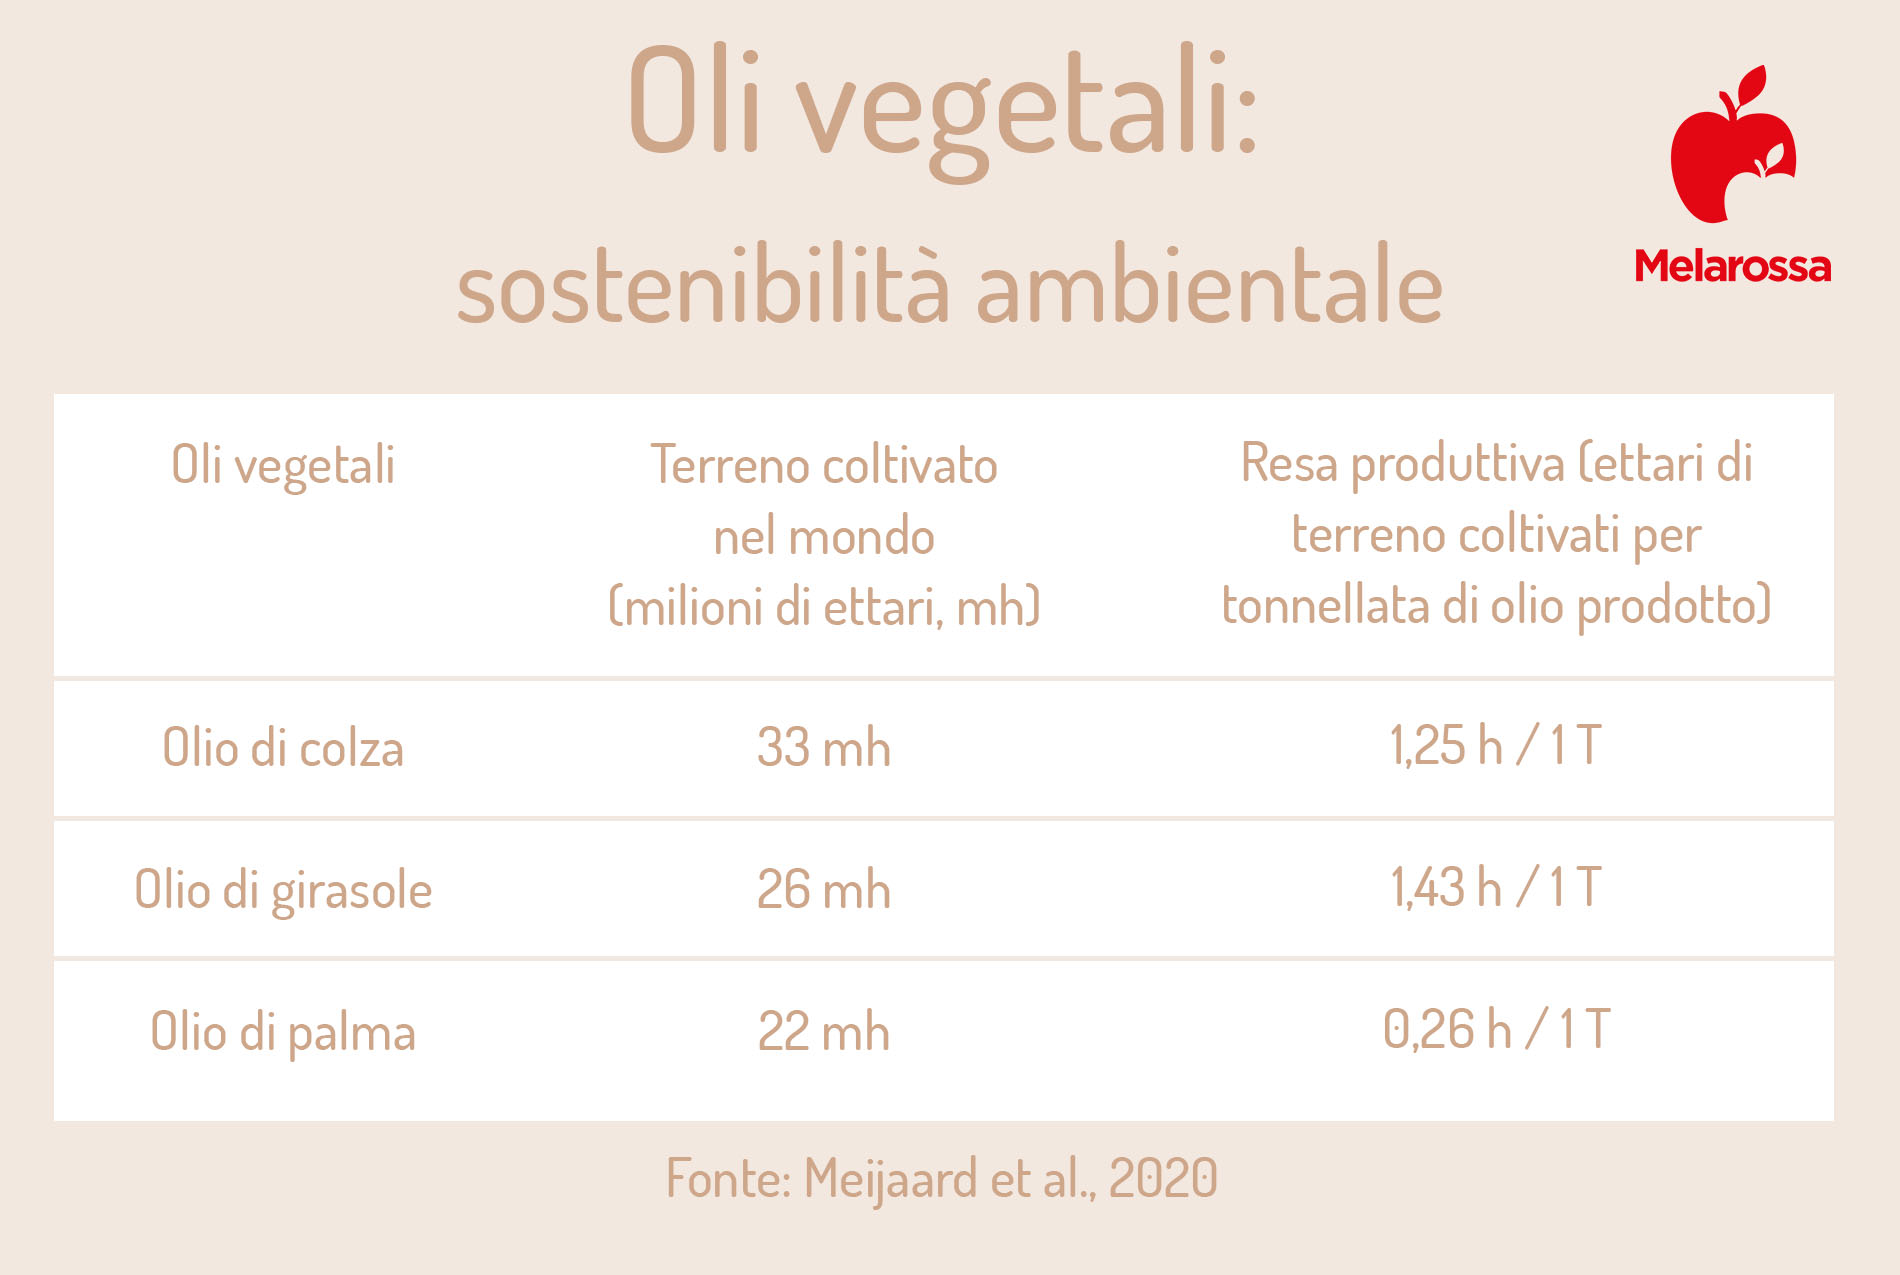 olio di colza: sostenibilità ambientale 